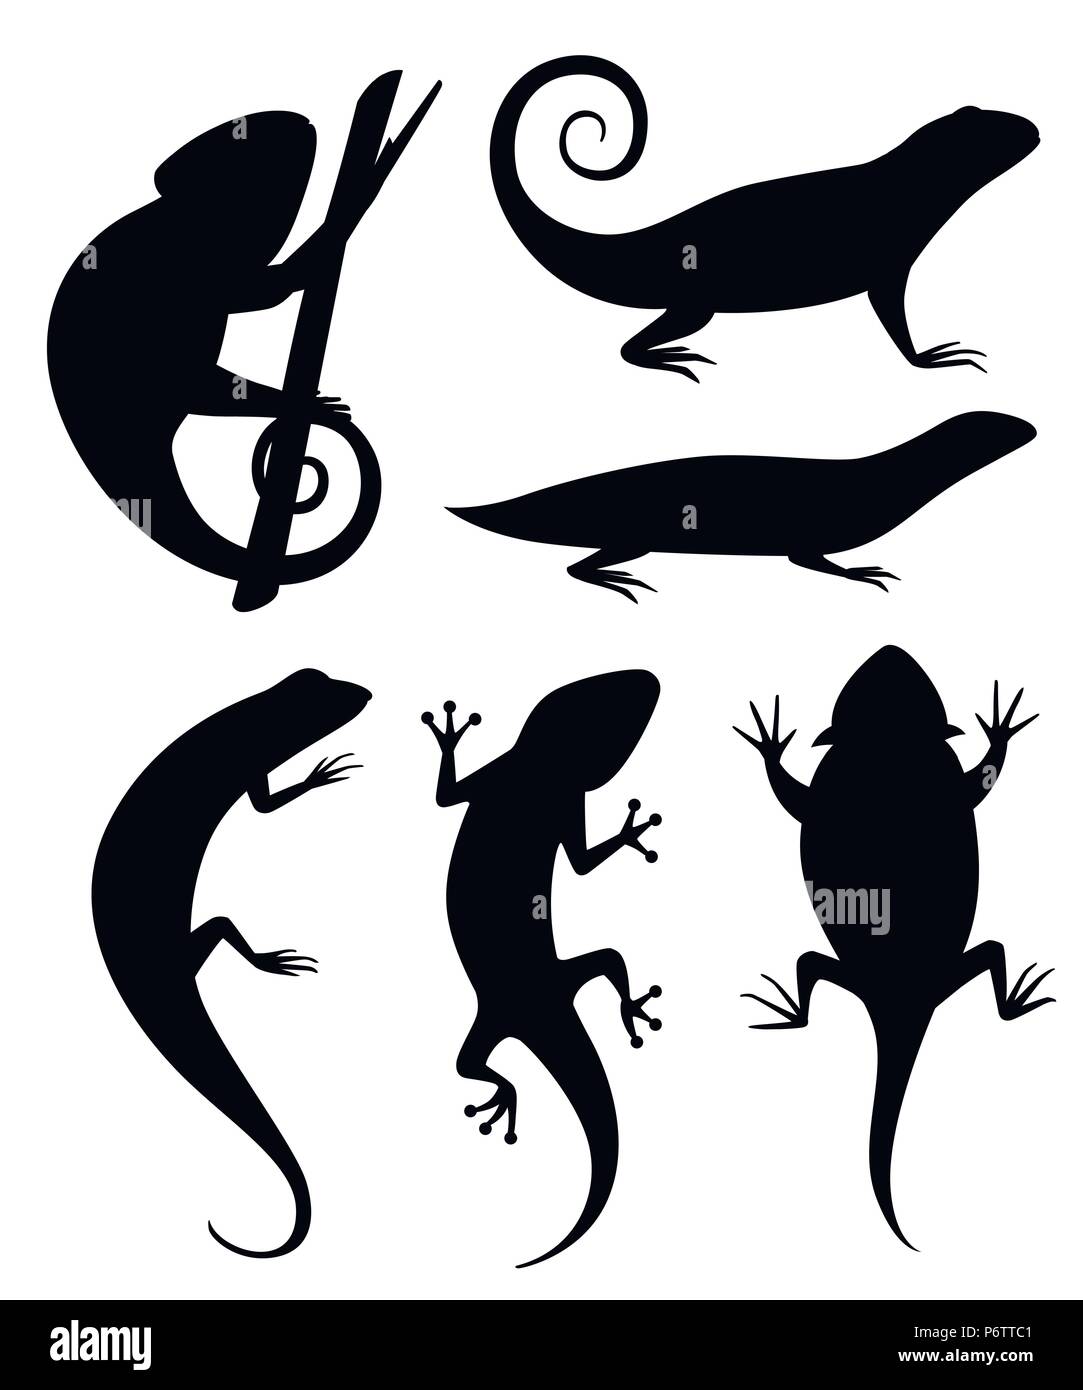 Schwarze Silhouette. Cartoon chameleon Klettern auf Zweig. Kleine Echsen. Tier Flachbild icon Sammlung. Vector Illustration auf weißem Hintergrund. Stock Vektor